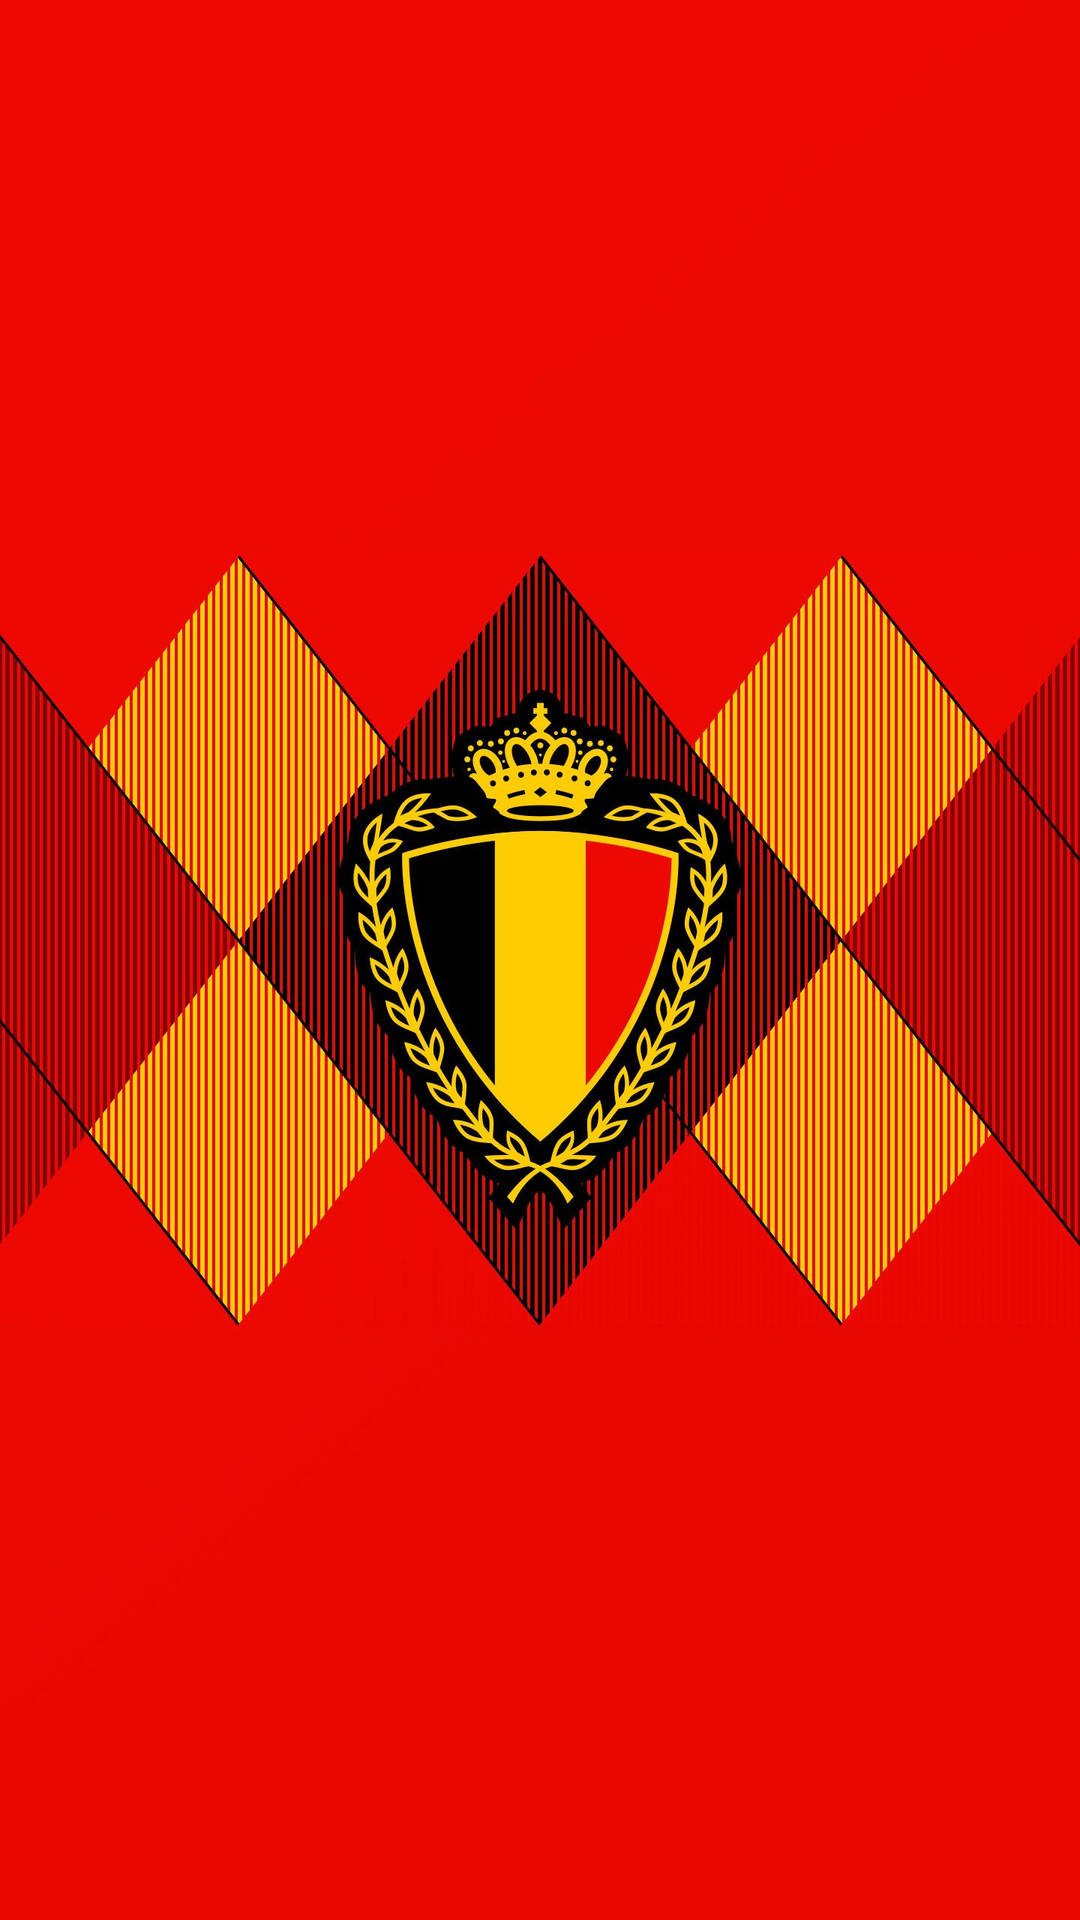 Belgium National Football Team Association Crest Wallpaper